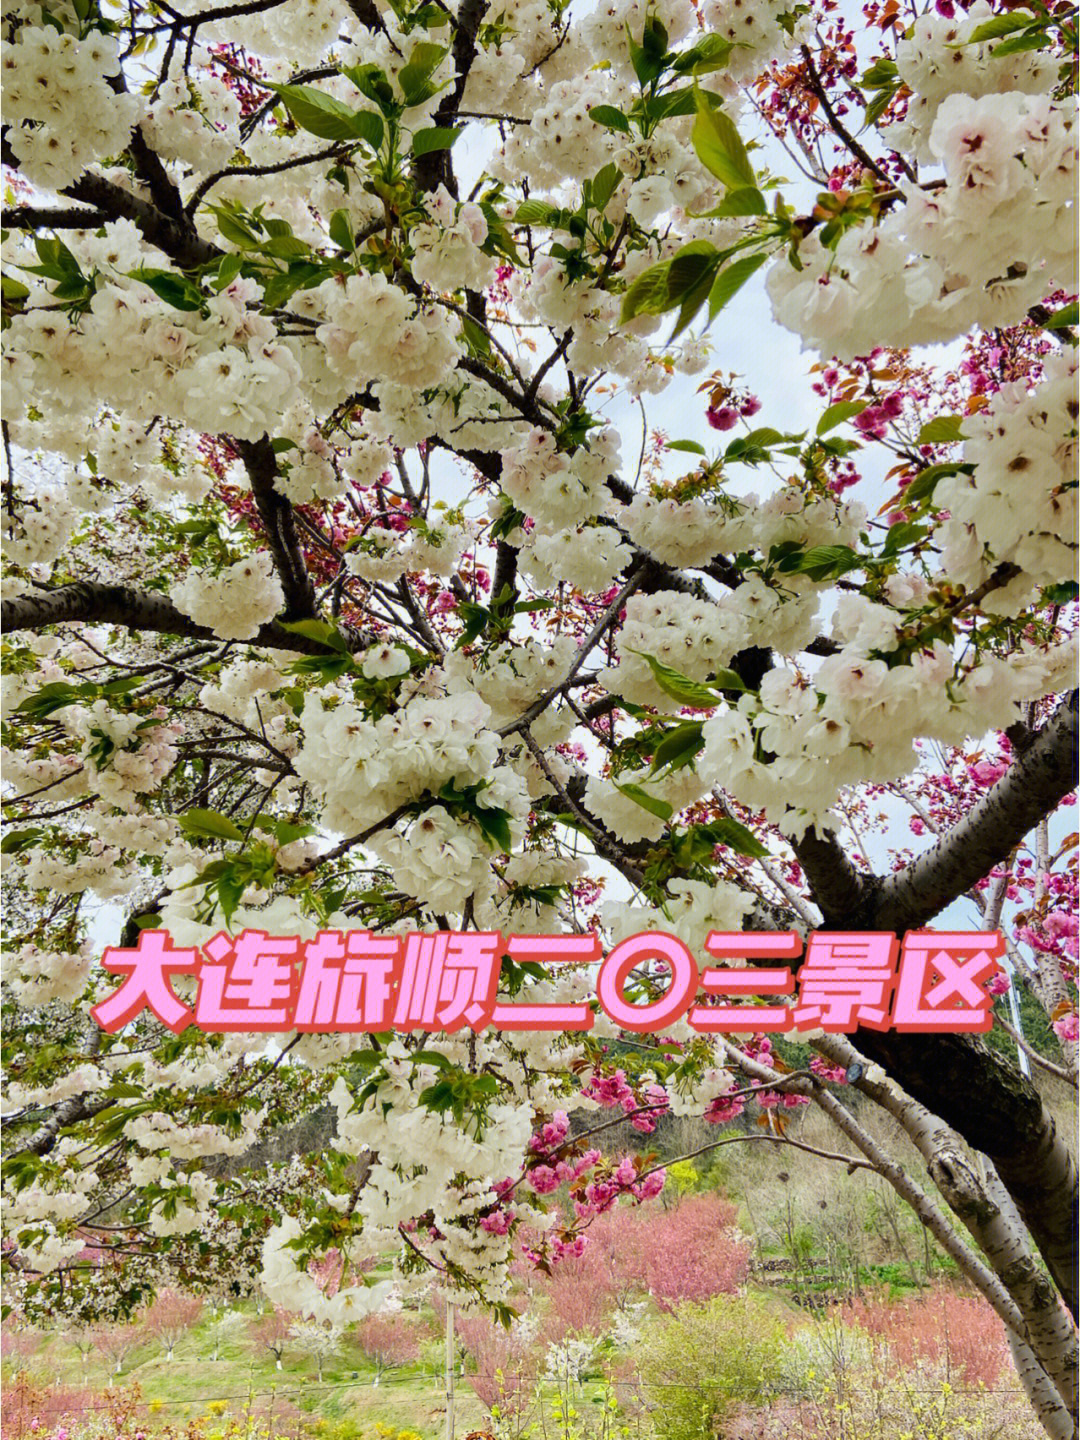 大连旅顺二〇三景区中国大连旅顺樱花节